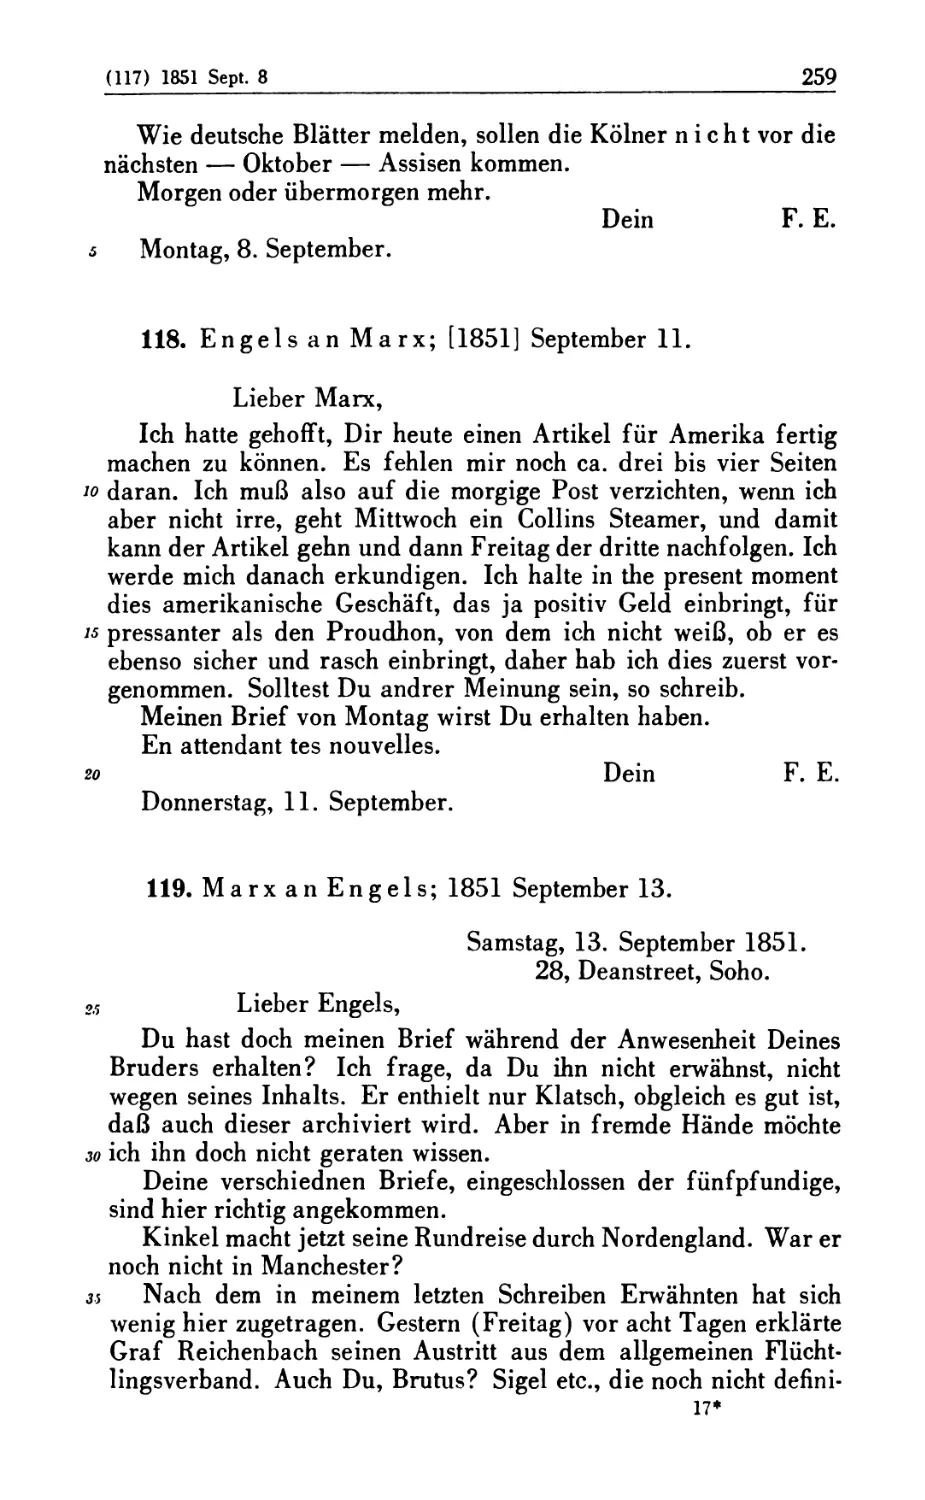 118. Engels an Marx; [1851] September 11
119. Marx an Engels; 1851 September 13